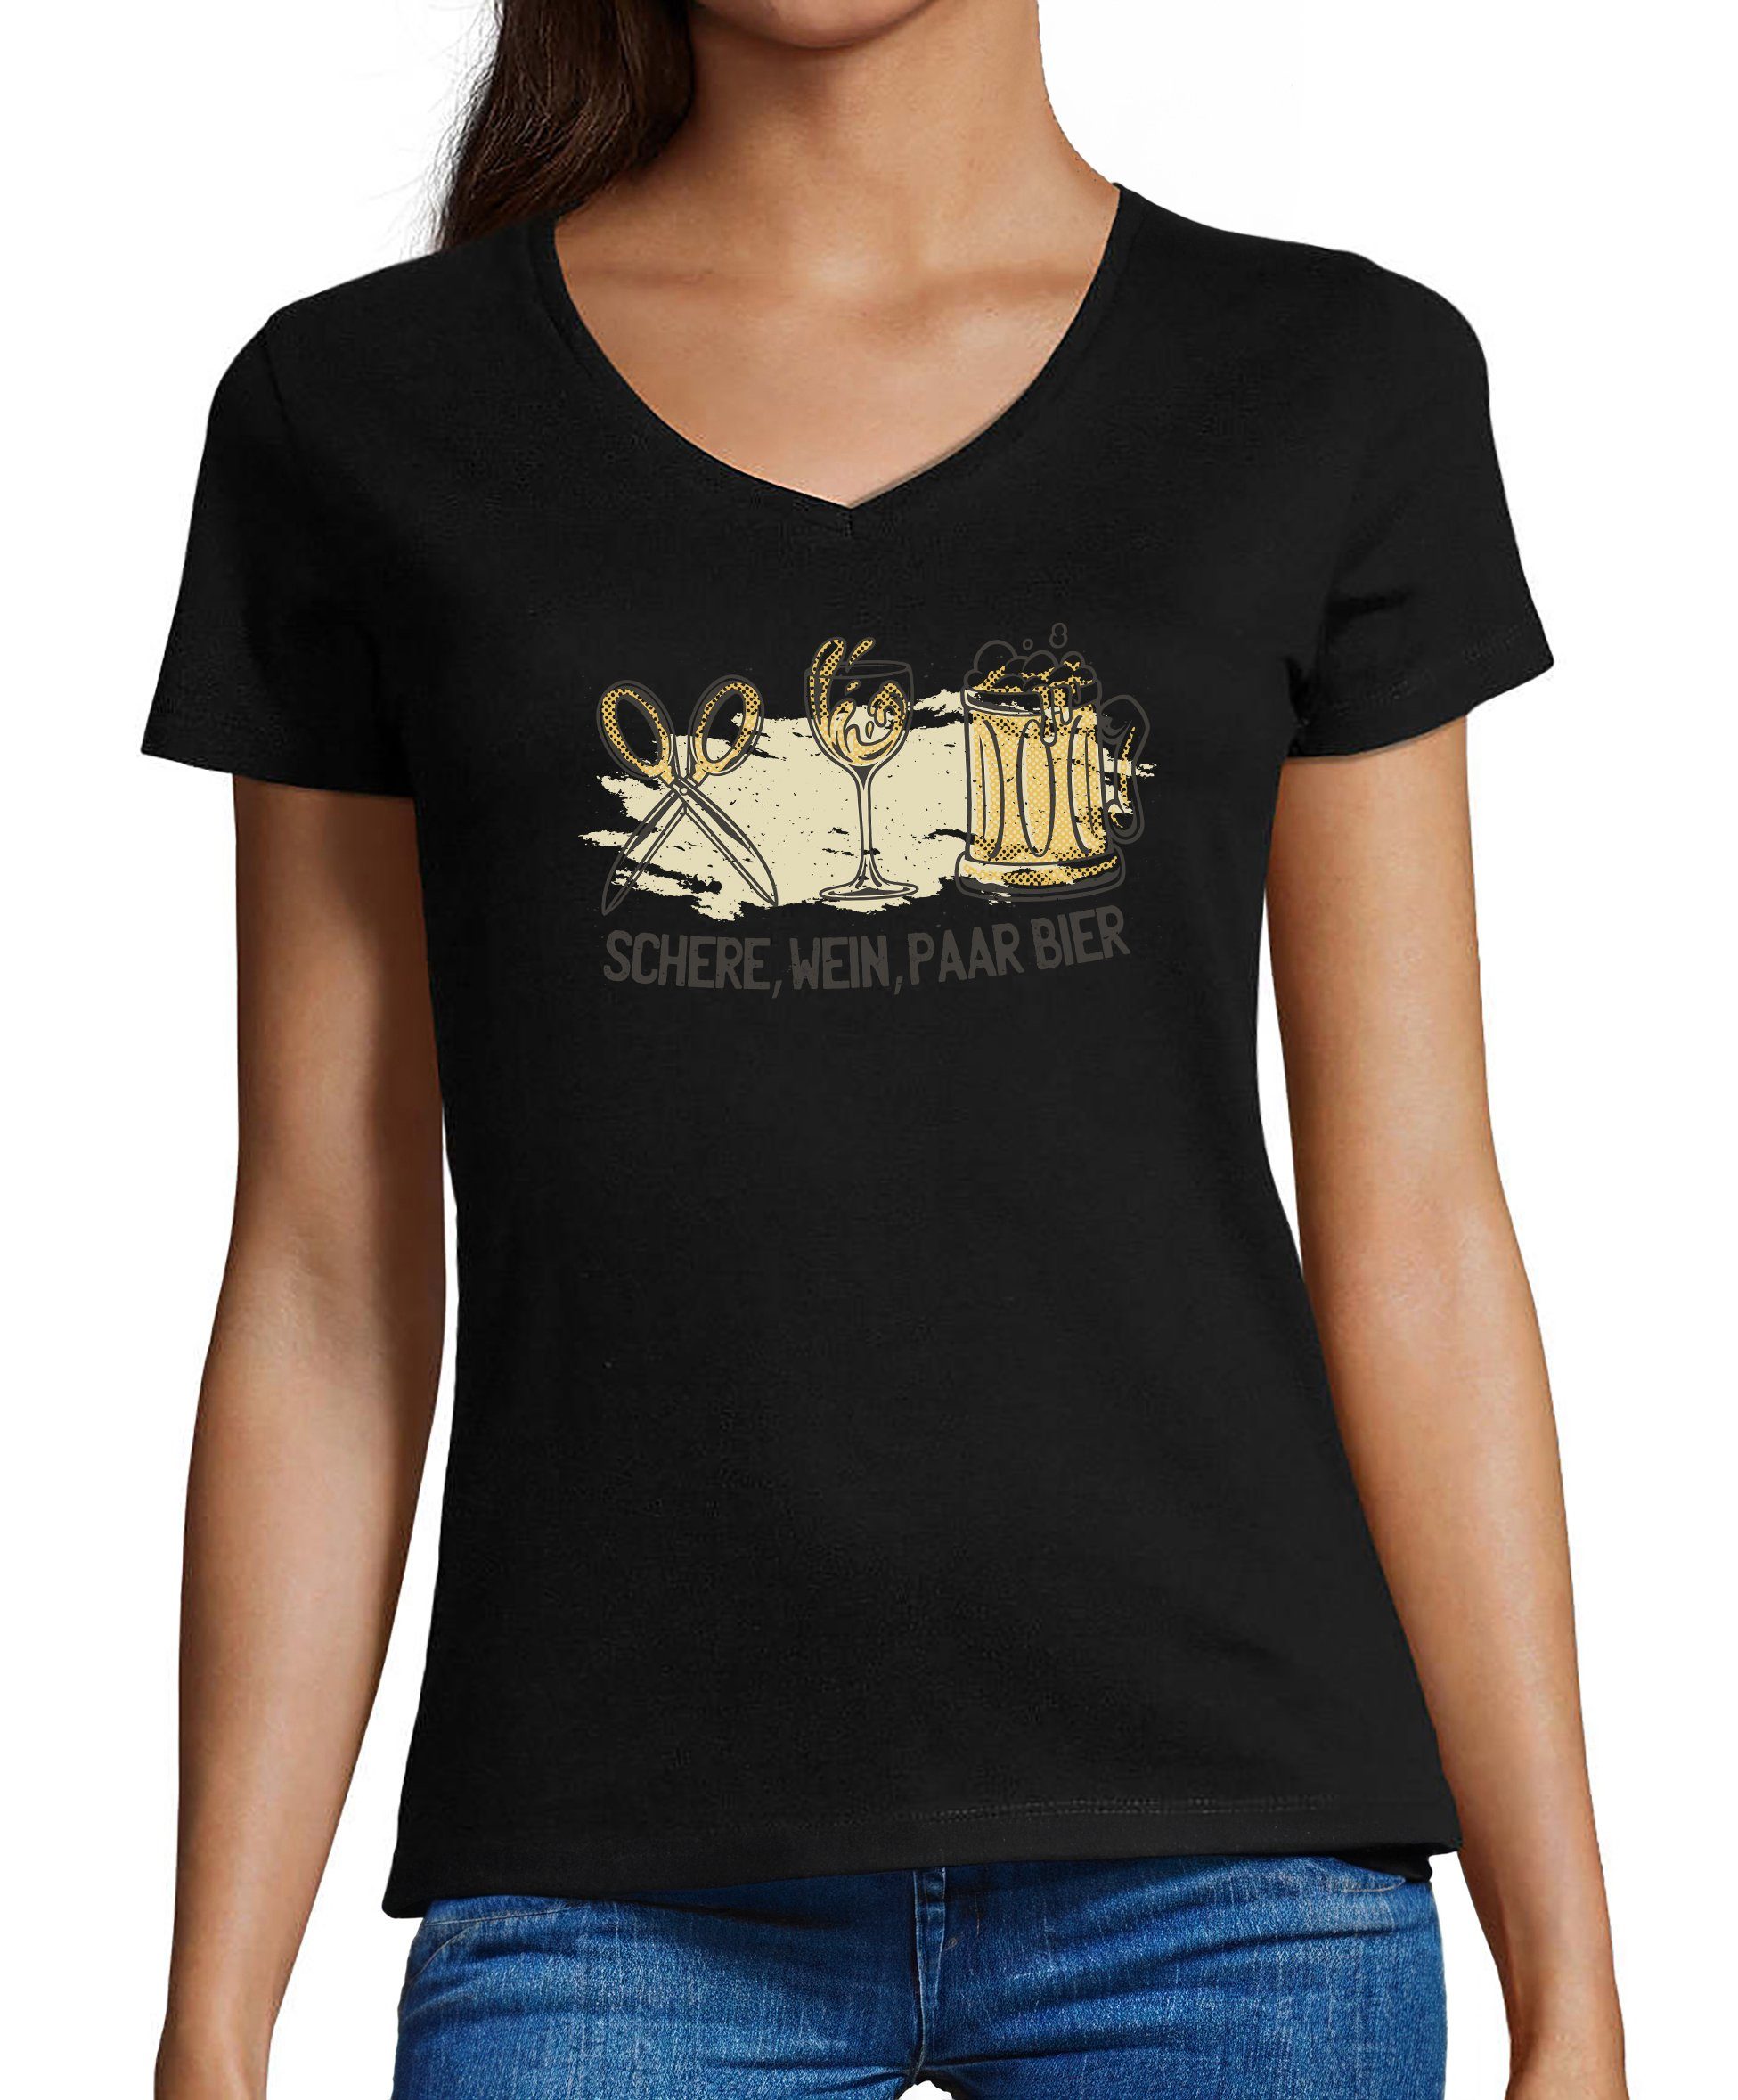 MyDesign24 T-Shirt Damen Oktoberfest T-Shirt - Schere, Wein, Paar Bier V-Ausschnitt Print Shirt Slim Fit, i321